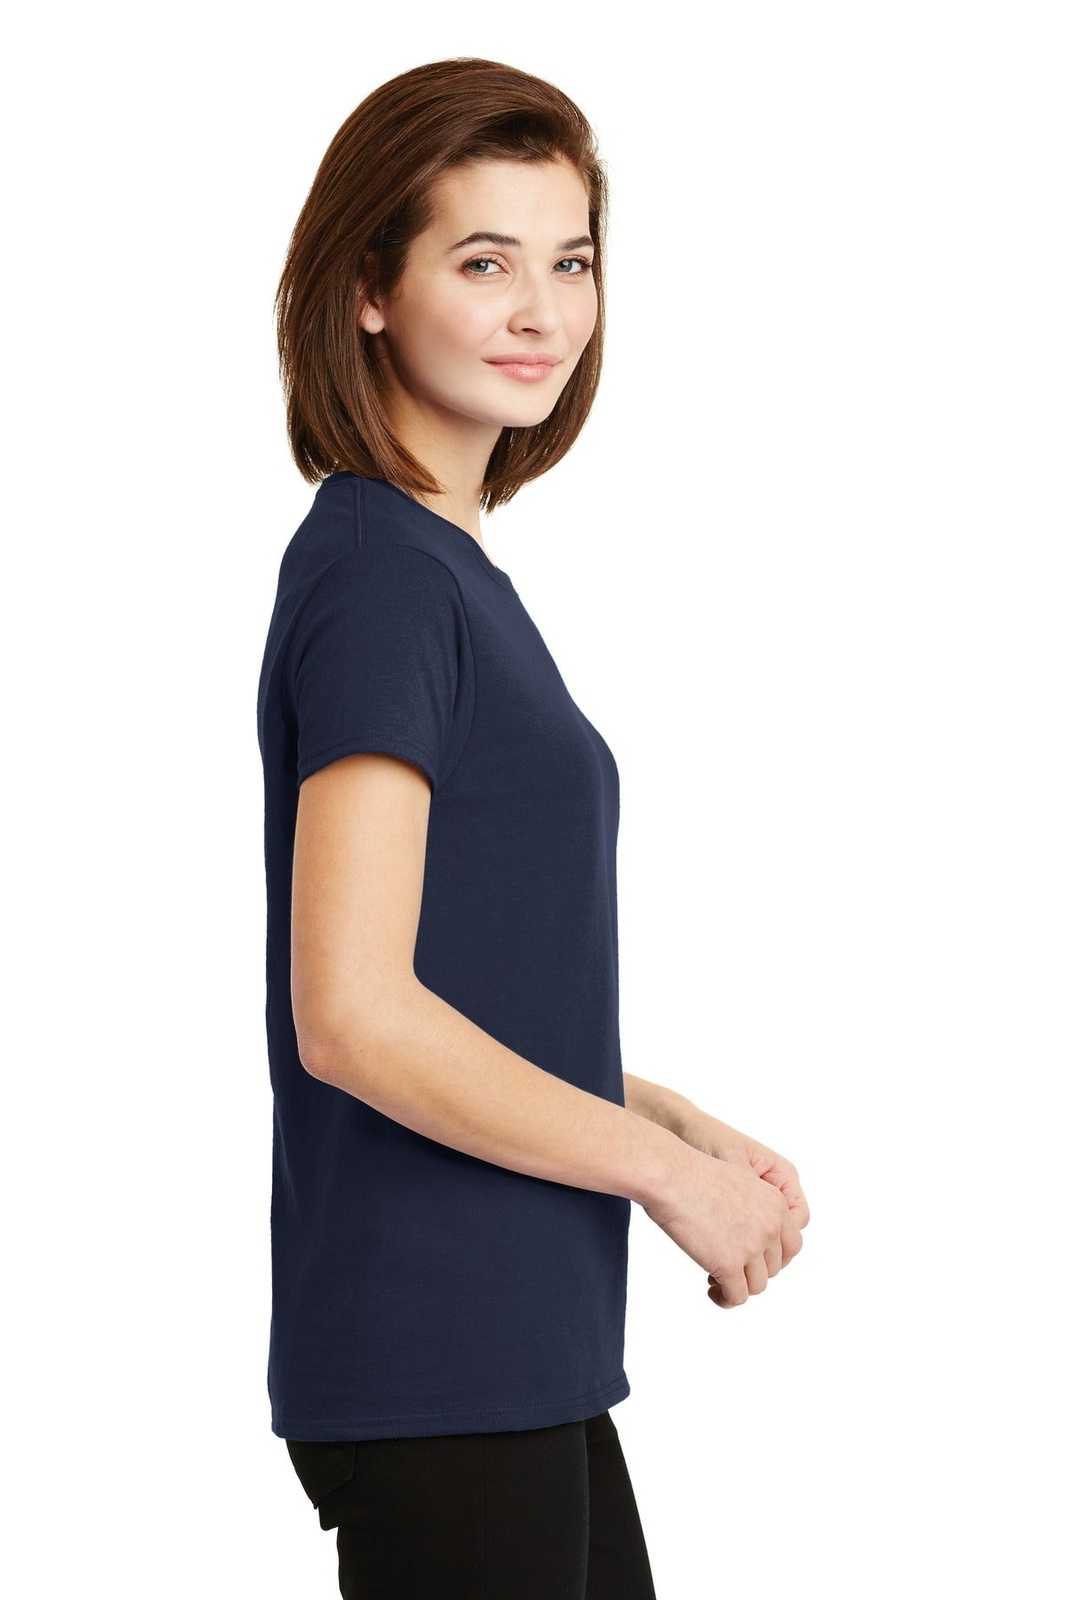 Gildan 2000L Ladies Ultra Cotton 100% Cotton T-Shirt - Navy - HIT a Double